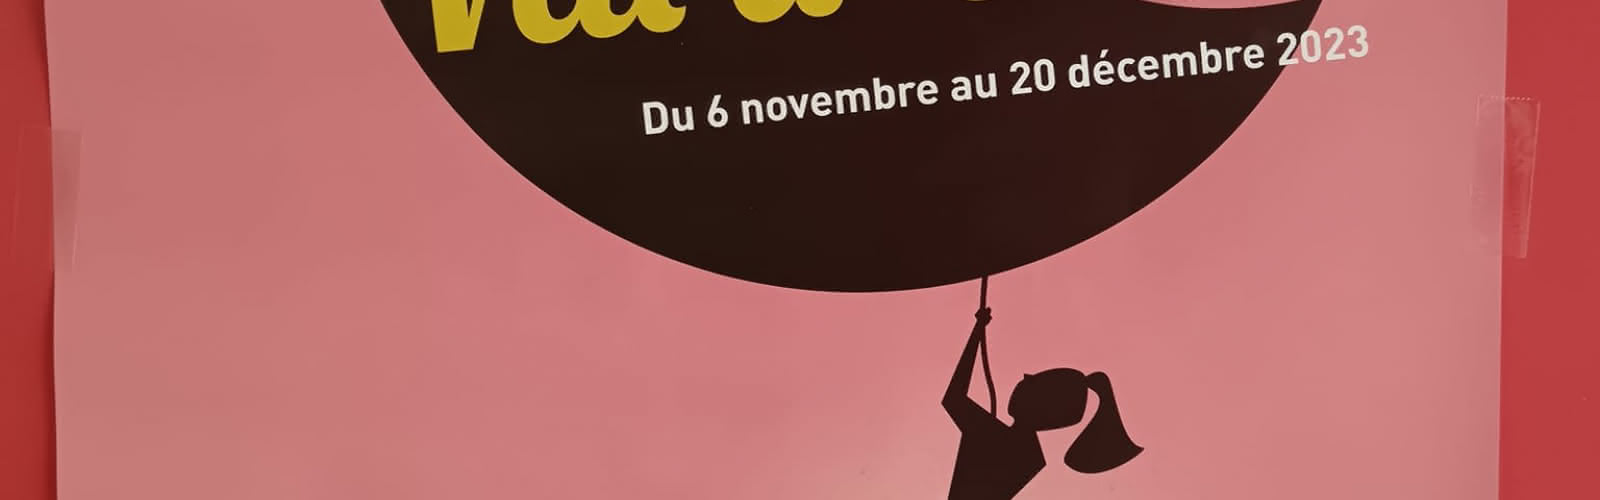 Affiche 2023 Festival du conte en Val d’Oise